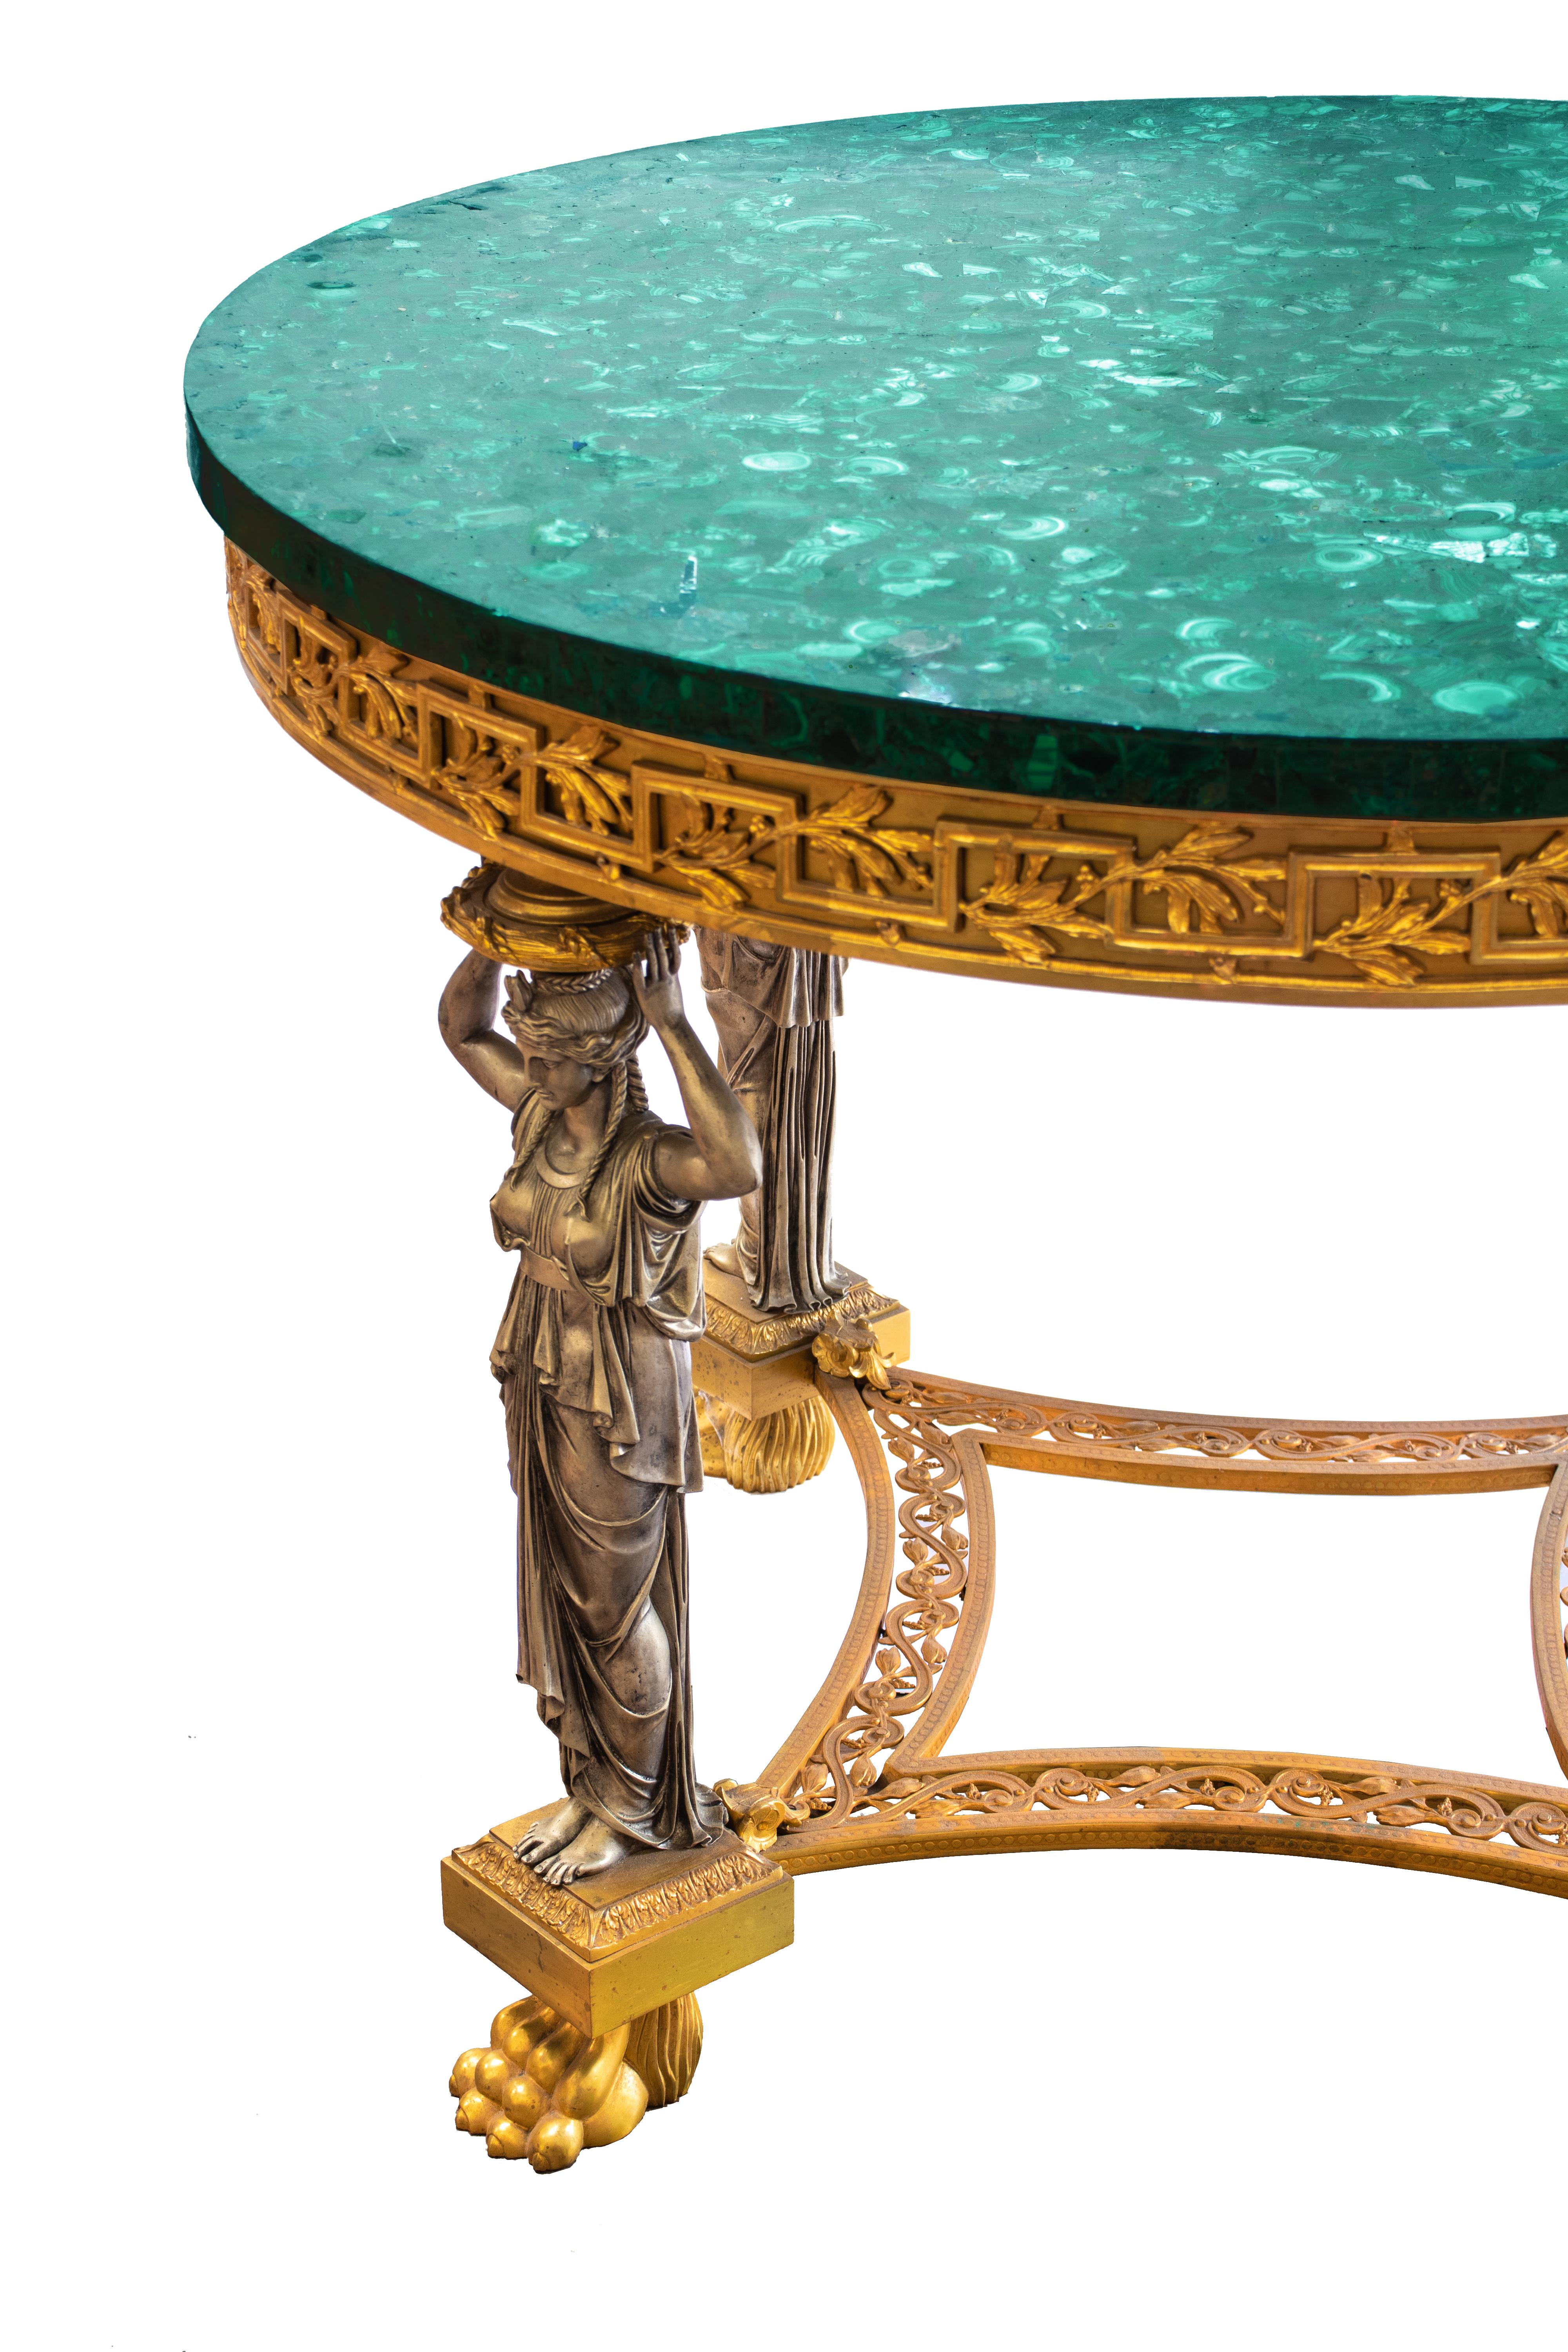 Runder Mitteltisch im neoklassischen Stil mit einer wunderschönen Tischplatte aus Malachitfurnier. Der Sockel ist aus versilberter und vergoldeter Bronze, mit vier Karyatiden auf Klauenfüßen, die einen massiven Rand tragen. Die Füße sind durch